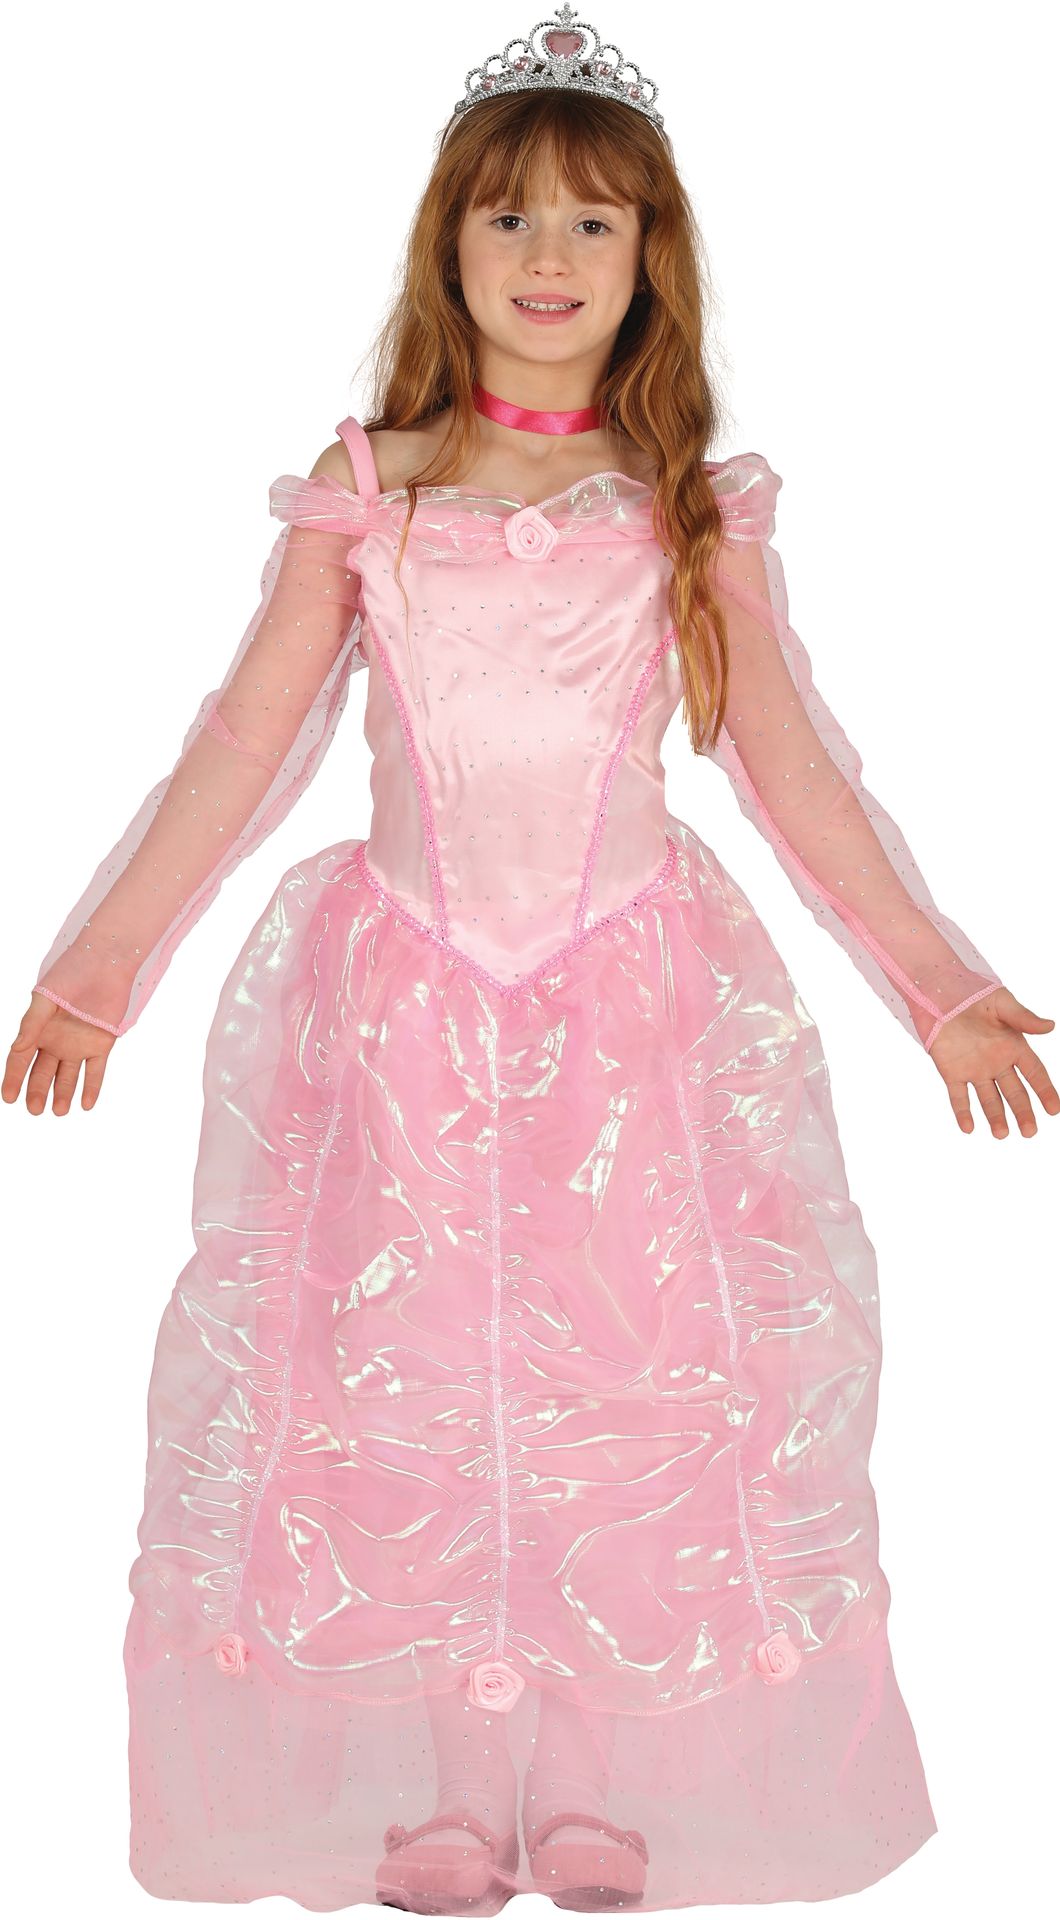 Roze prinses jurk meisjes